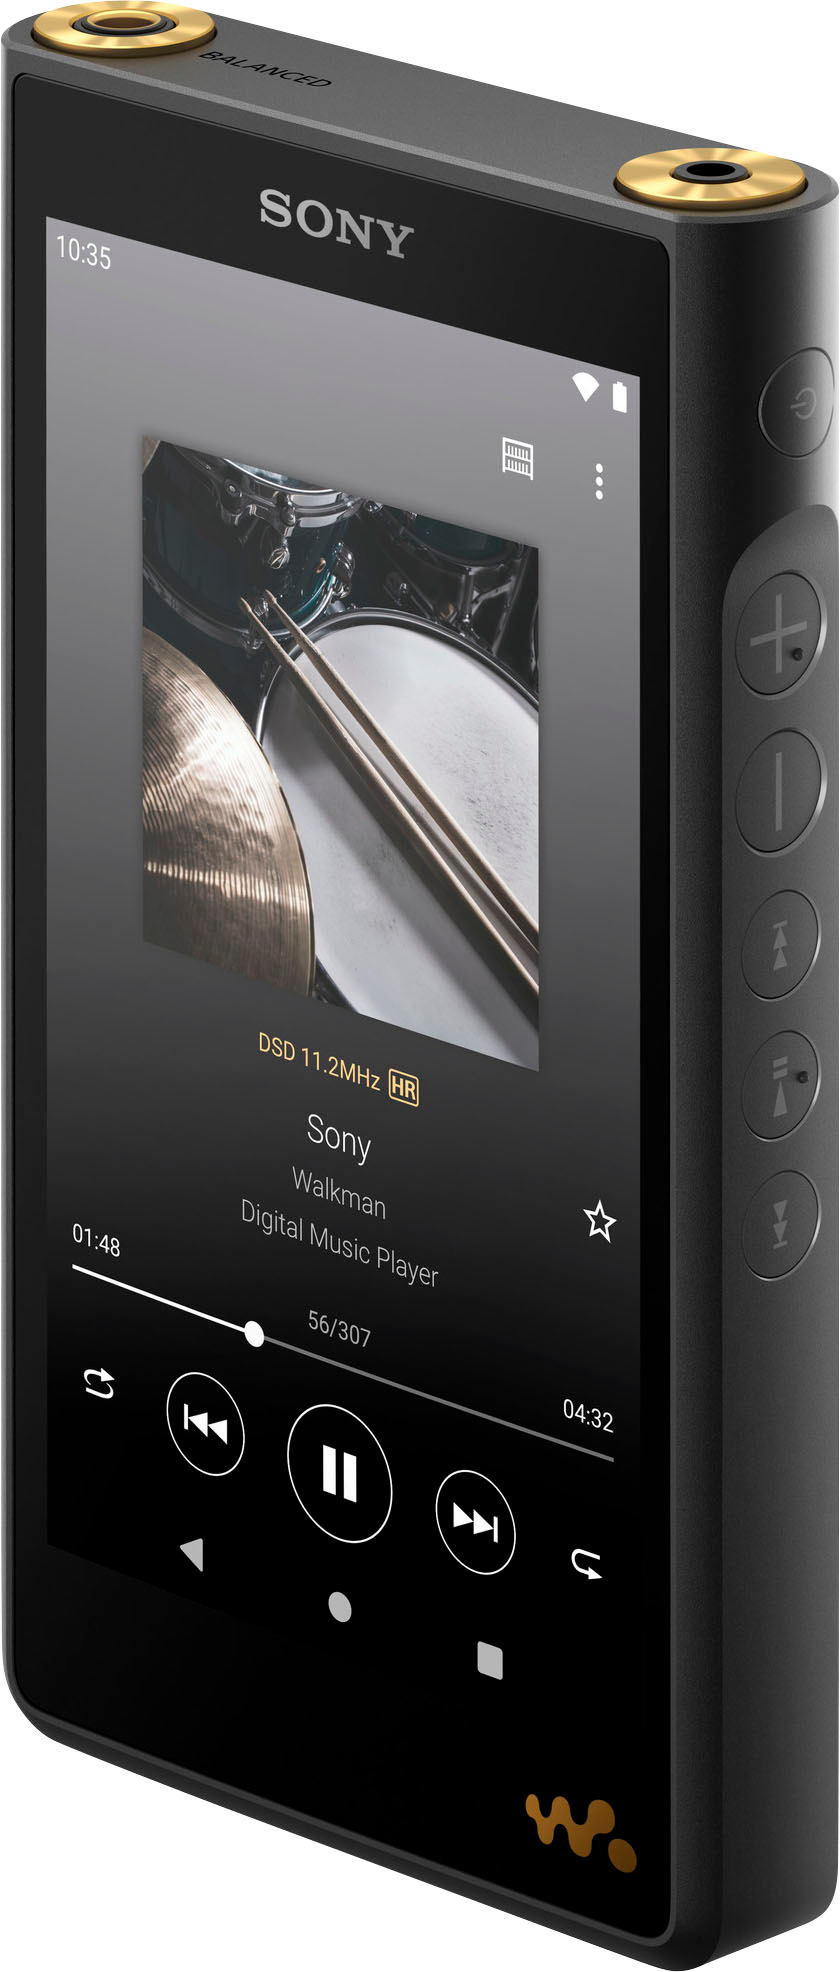 Sony NWWM1AM2 Walkman High Resolution Digital Music Player Black